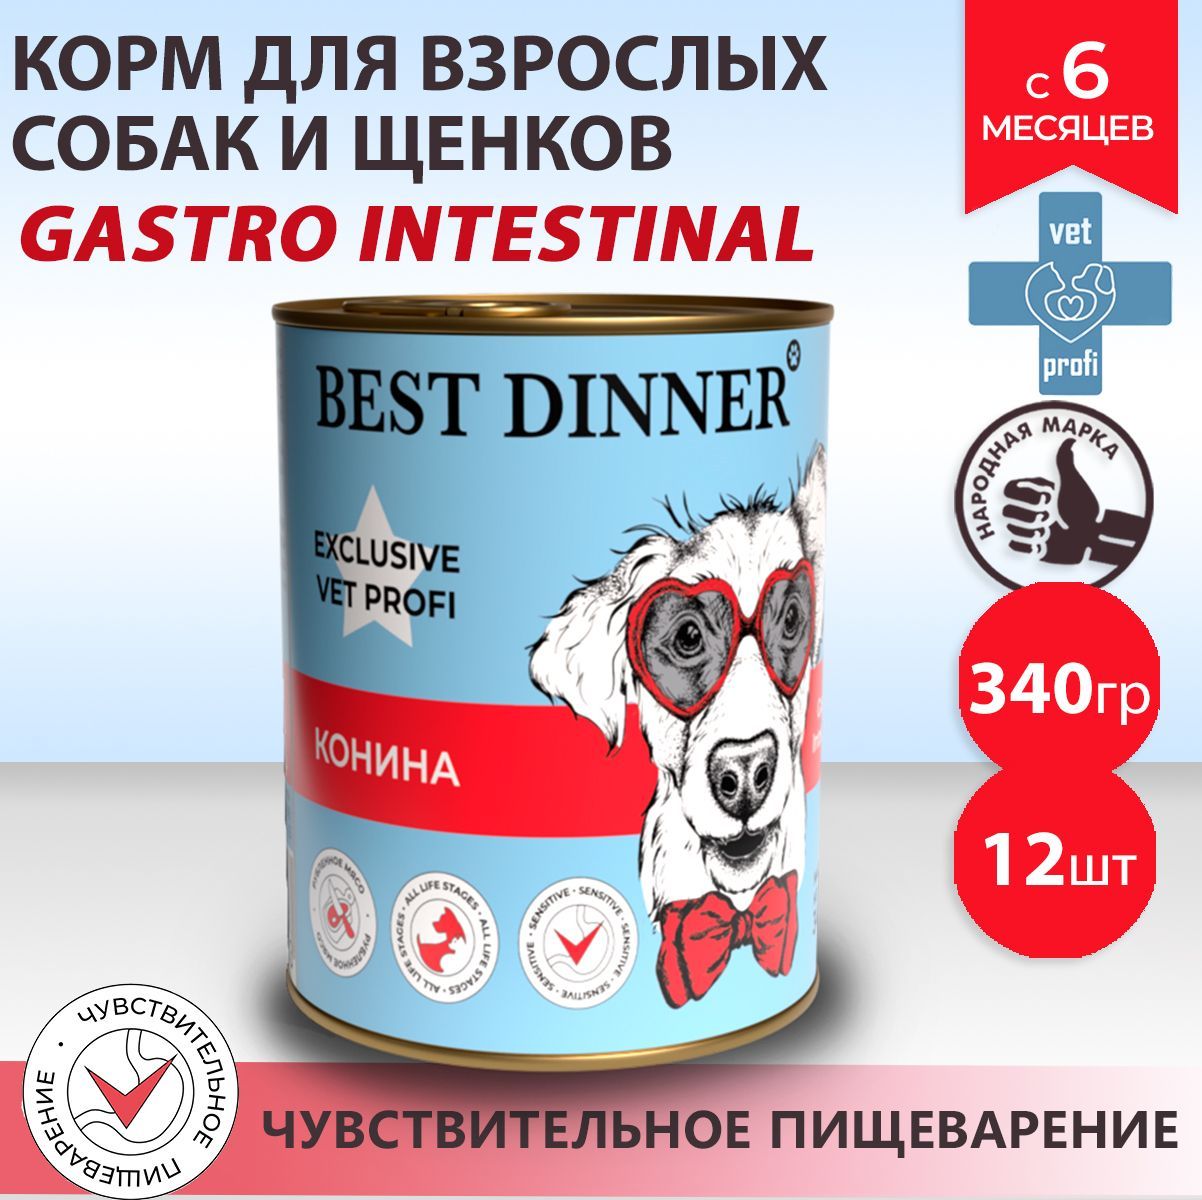 Gastrointestinal корм для собак влажный. Корм Проплан гастро Интестинал для собак консервы. Best dinner Exclusive vet Profi Gastro intestinal кусочки в соусе ягненок. Корм бест для собак отзывы